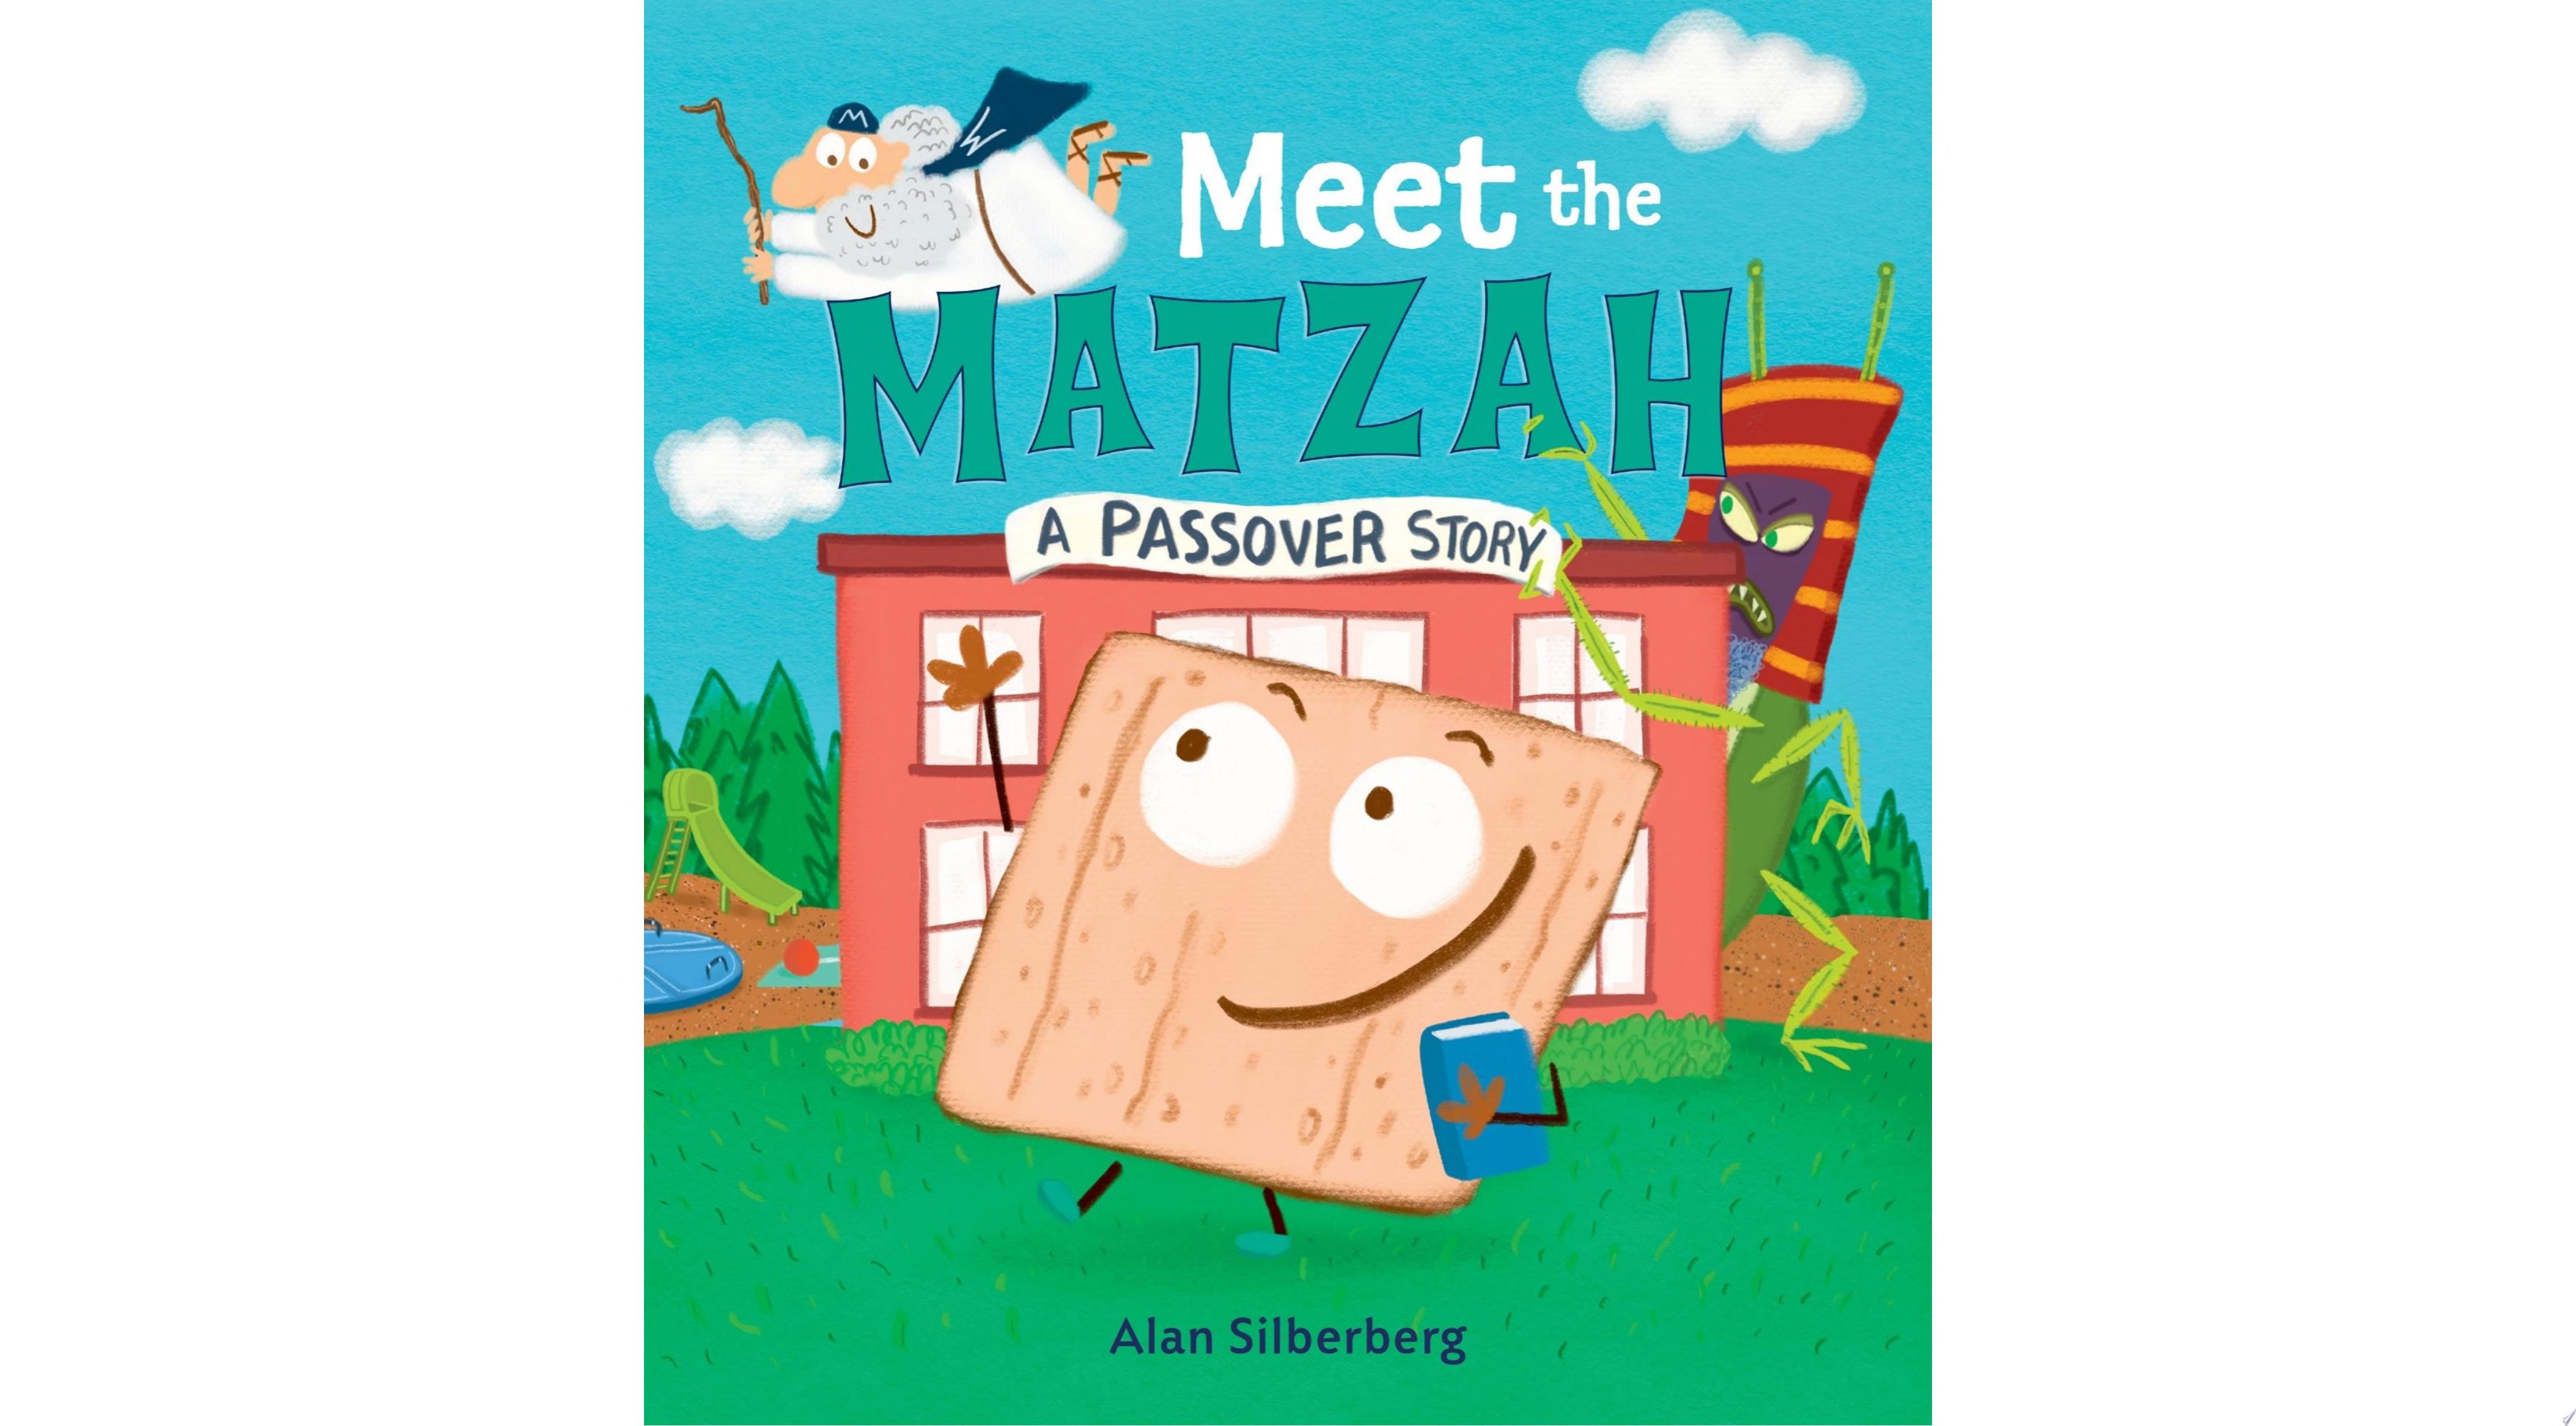 Image for "Meet the Matzah"